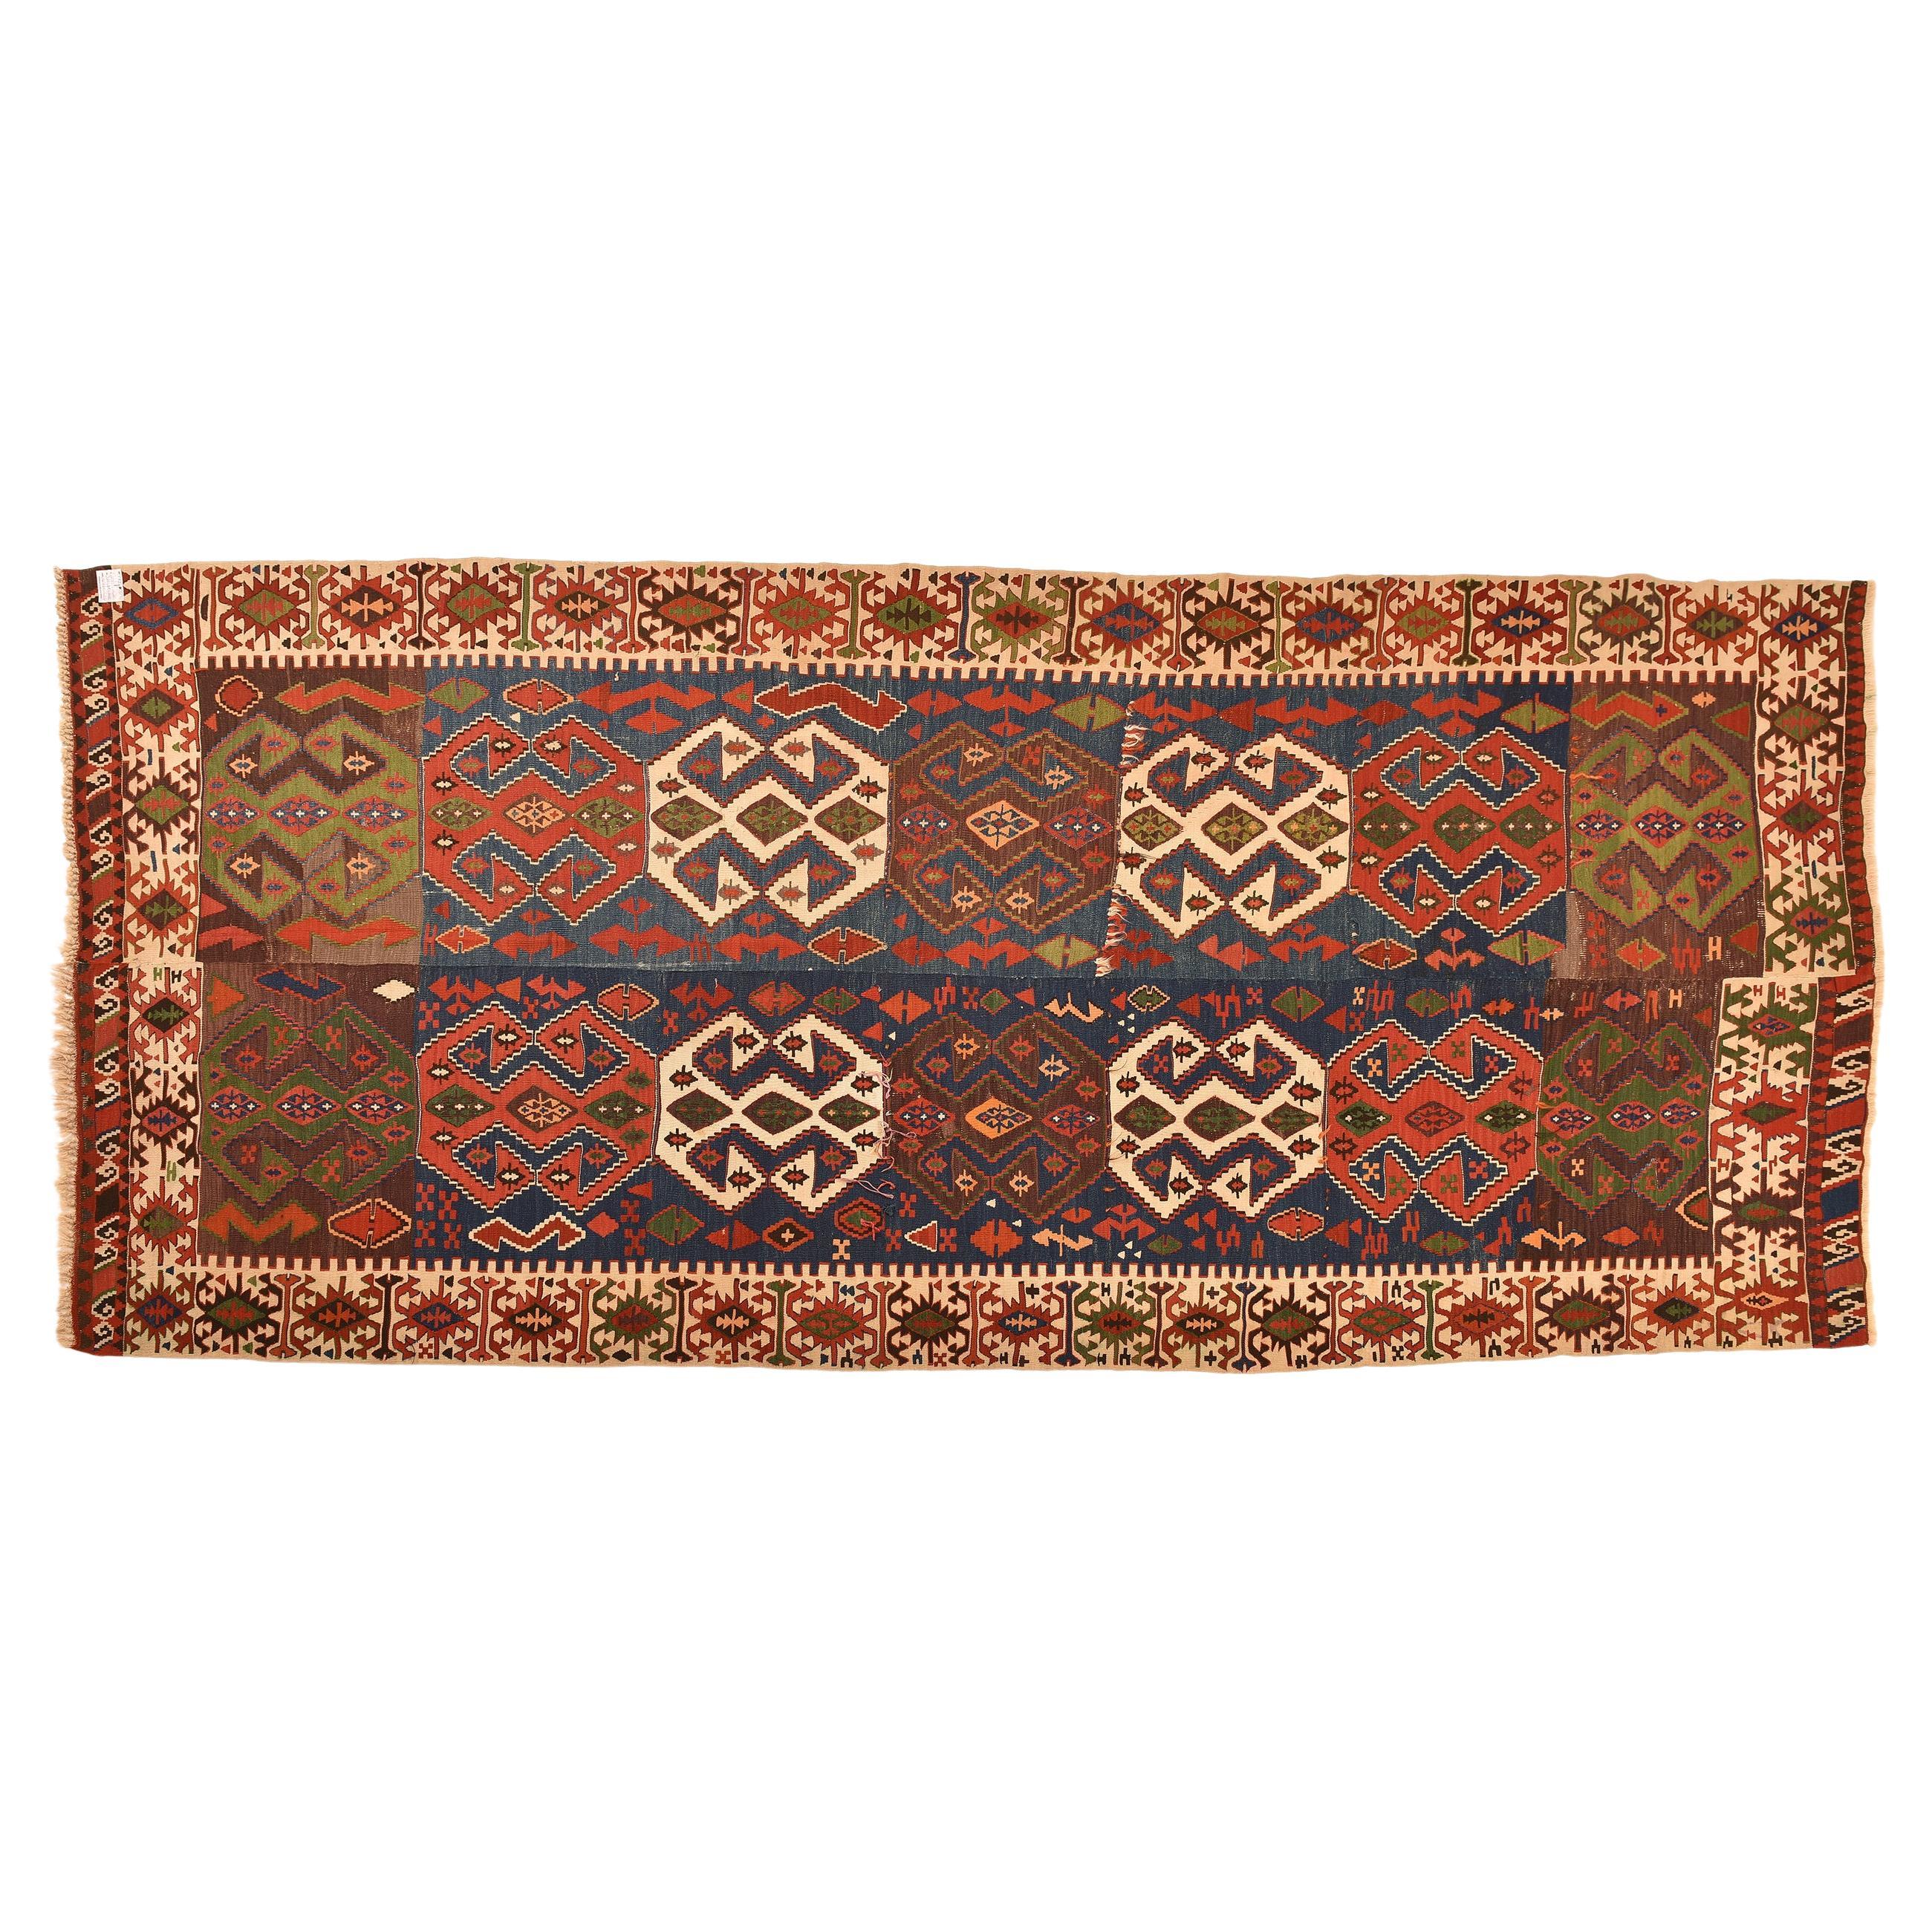 nr. 1091 -  Magnifique kilim turc, l'un des objets d'art orientaux les plus célèbres.
Excellente exécution et belles couleurs, y compris le rare vert.
Réglage de droite dans la salle de départ.